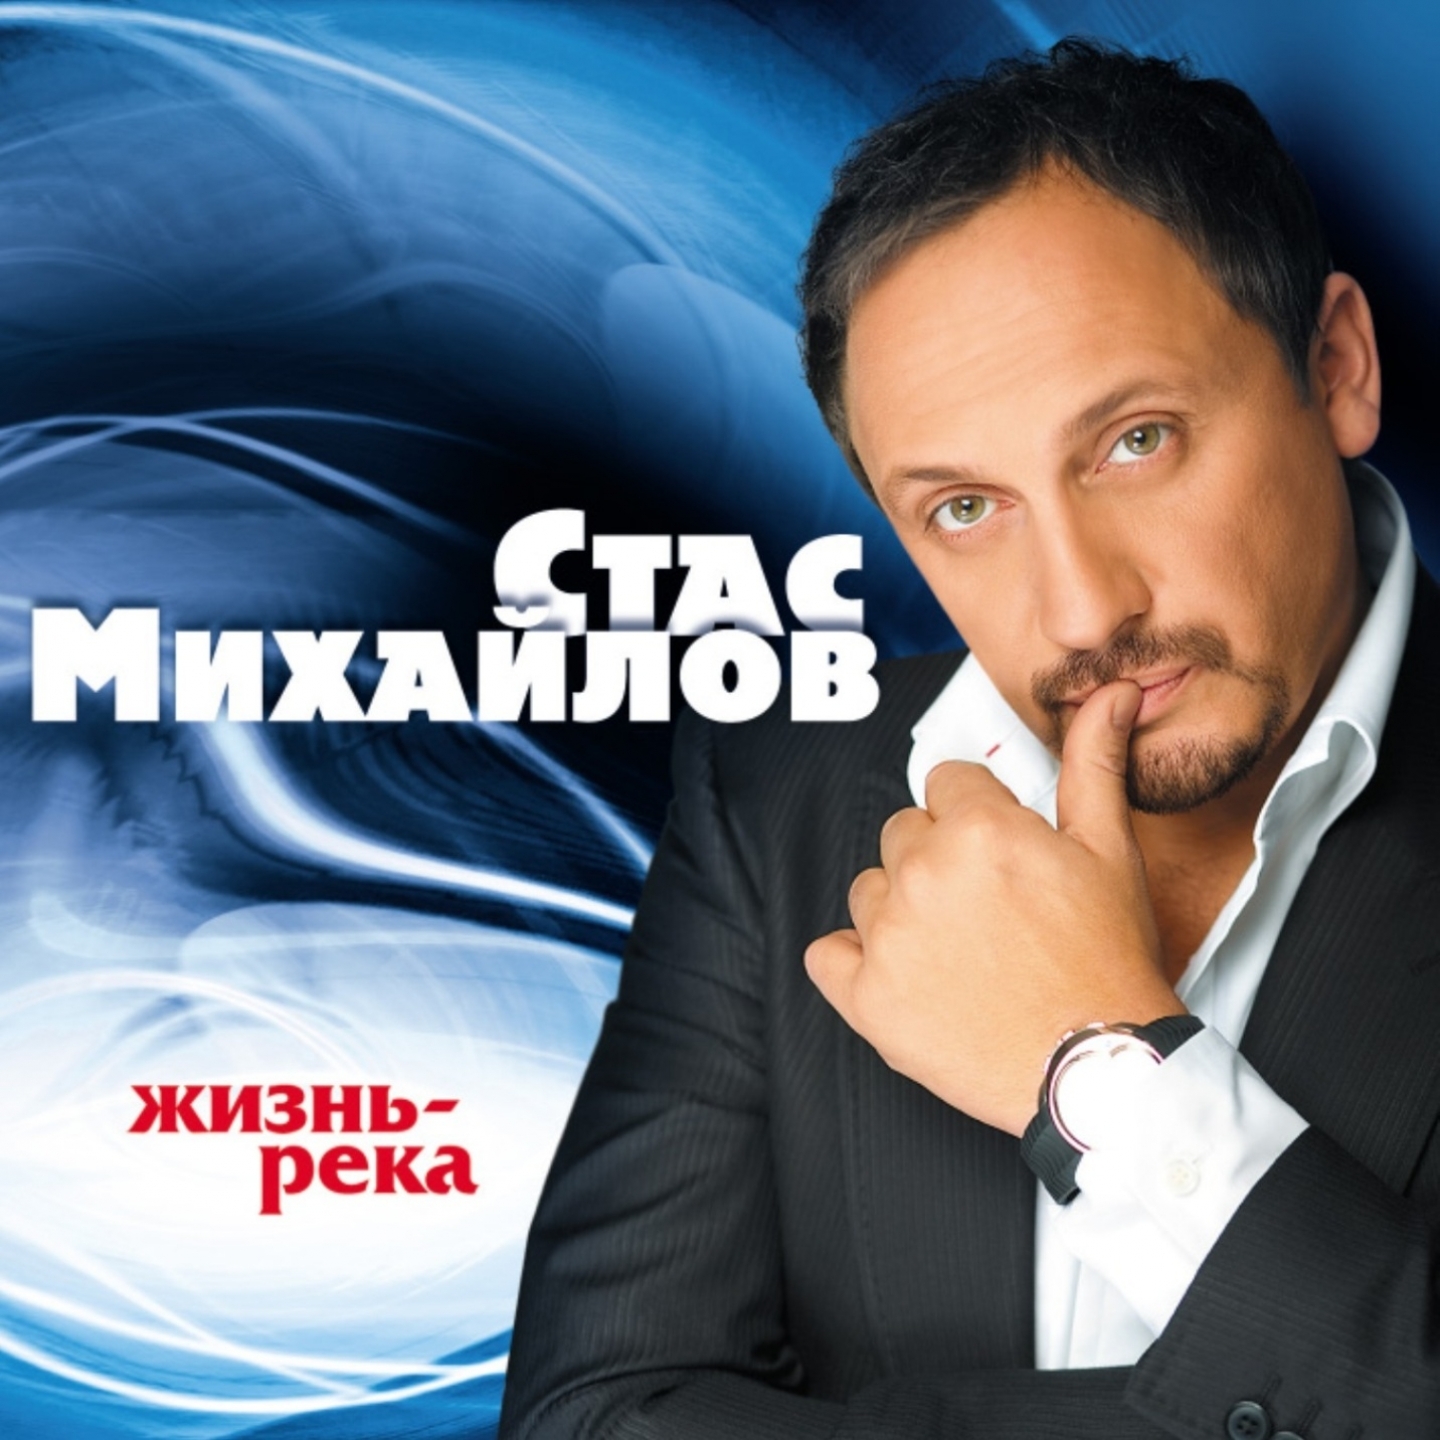 Другие популярные песни. Квадро диски Стаса Михайлова.